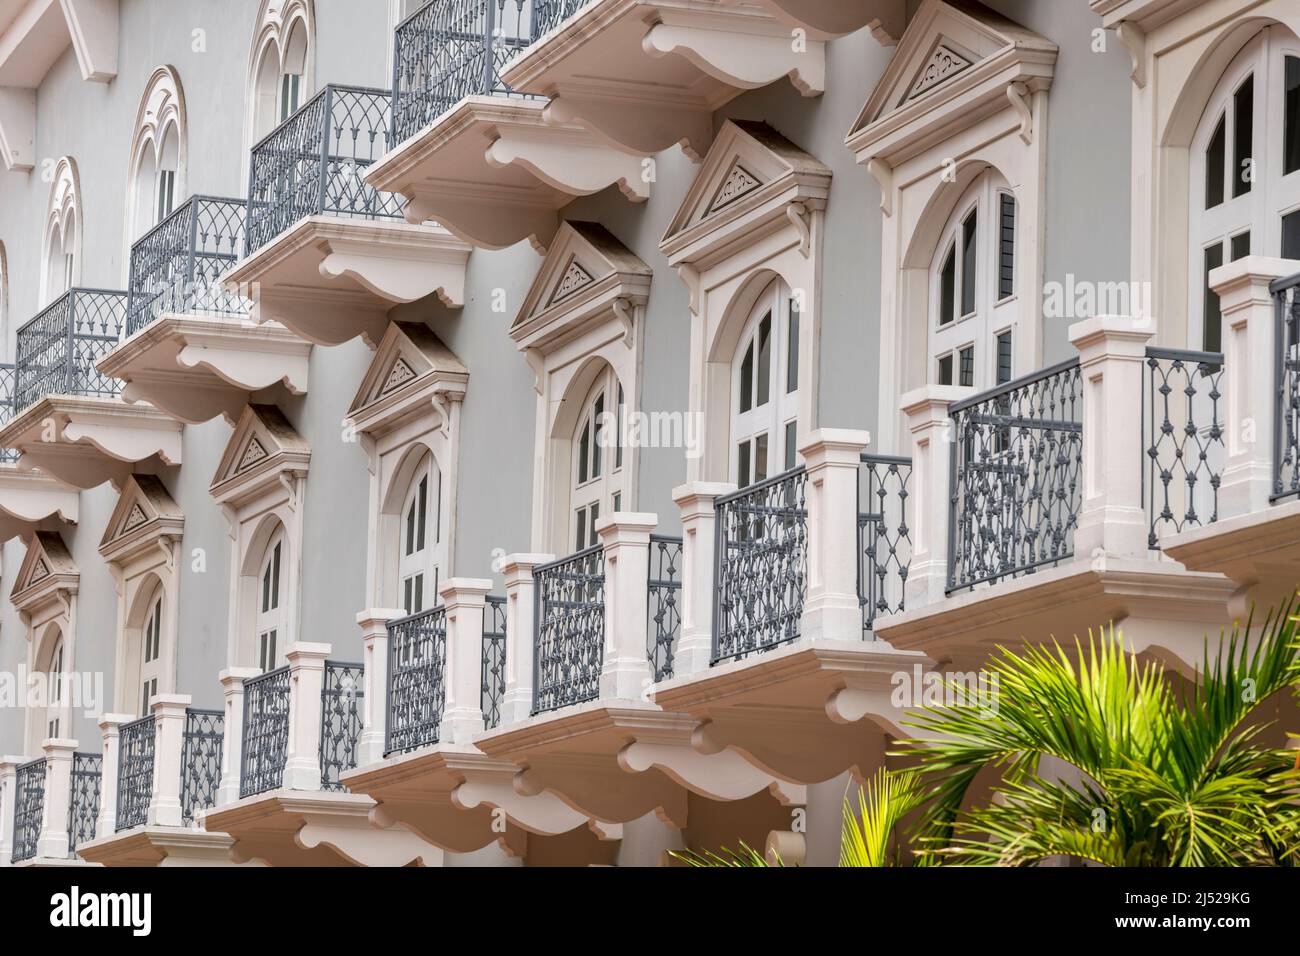 Die historischen Fassaden in der Altstadt bekannt als Casco Viejo in Panama City, Panama., Mittelamerika Stockfoto